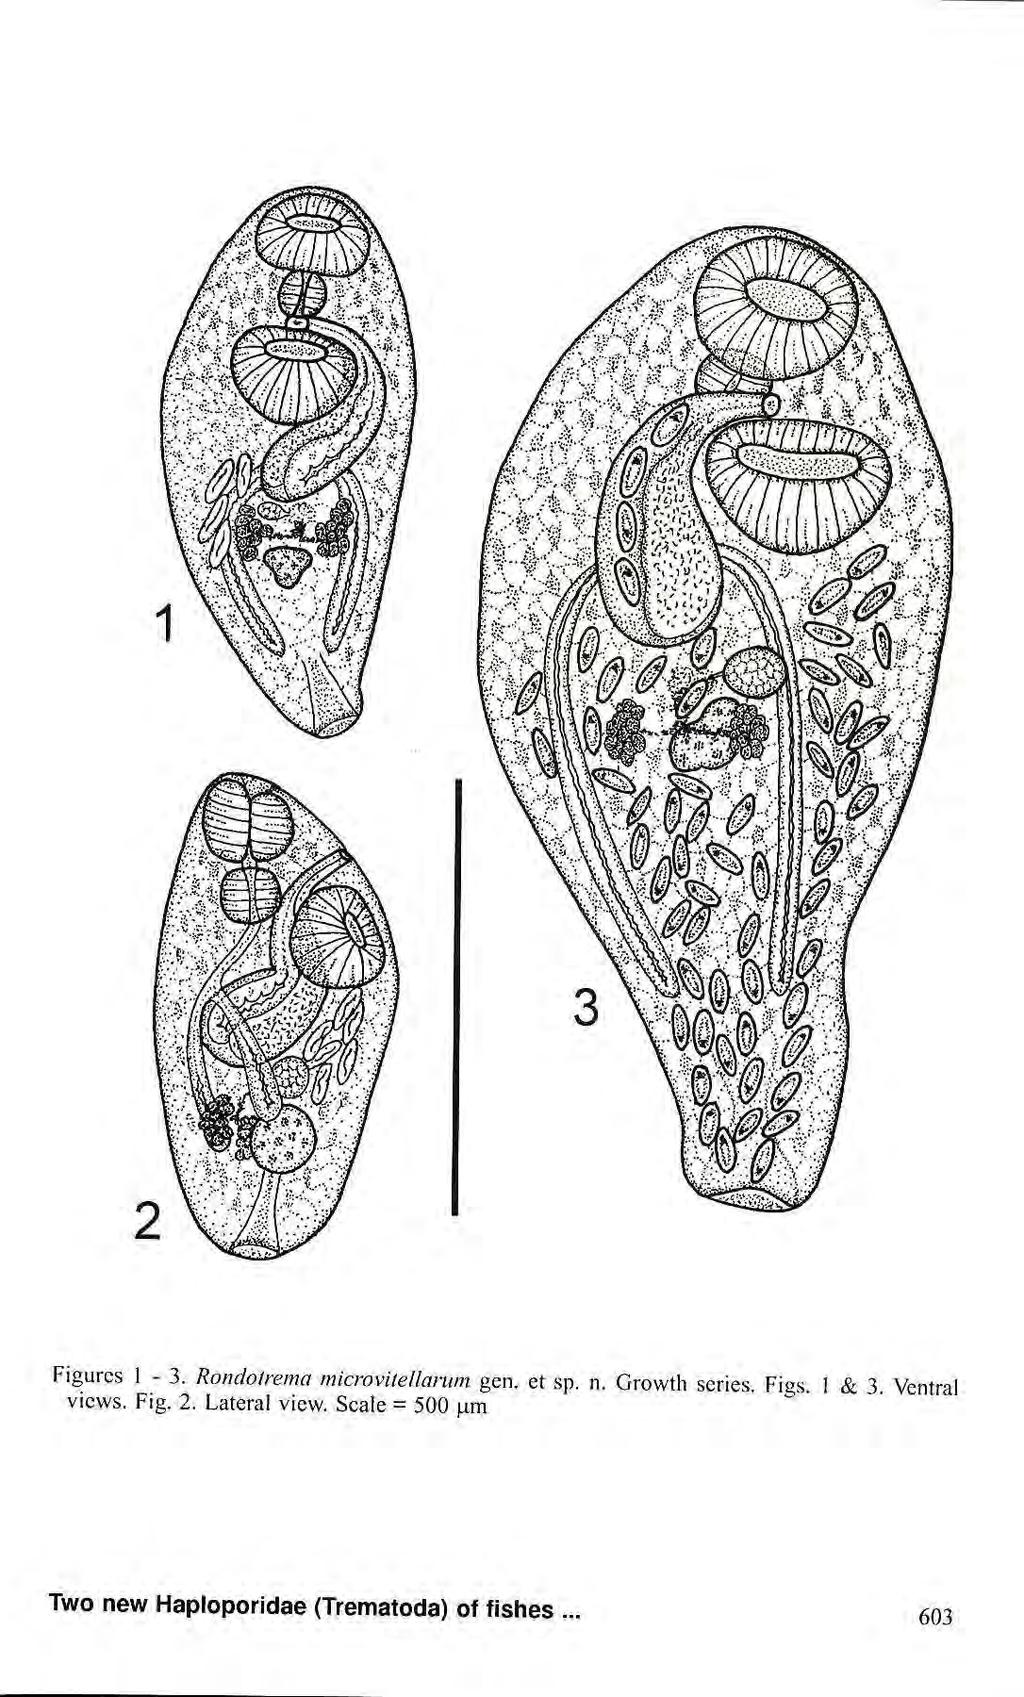 igurcs 1-3. Rondotrema microvitellarum gen. et sp. n.